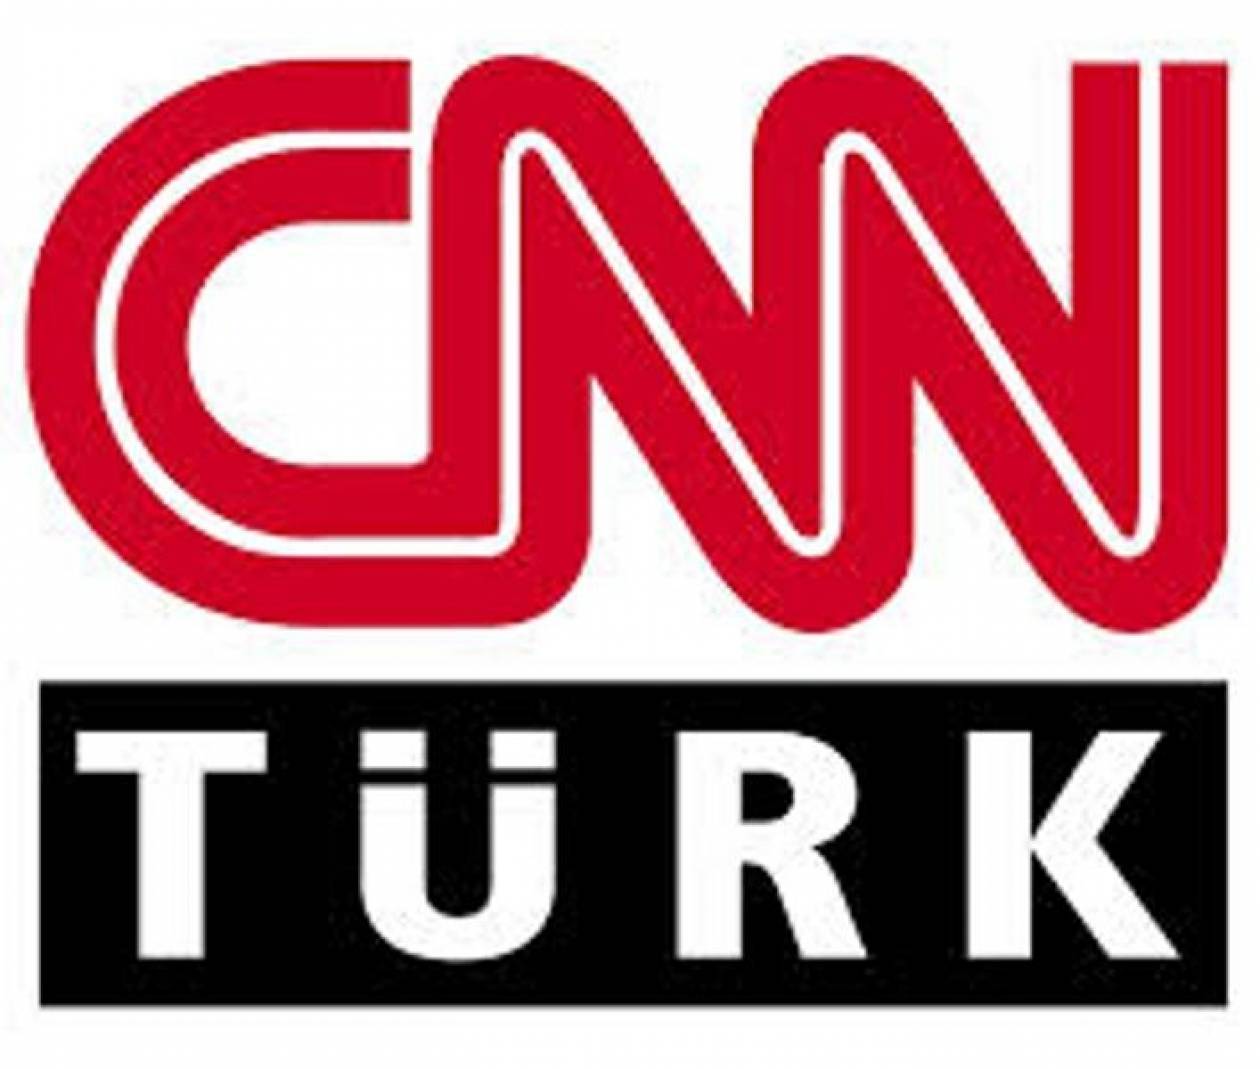 Μαγειρική στο CNN Turk την ώρα των επεισοδίων στην Κωνσταντινούπολη